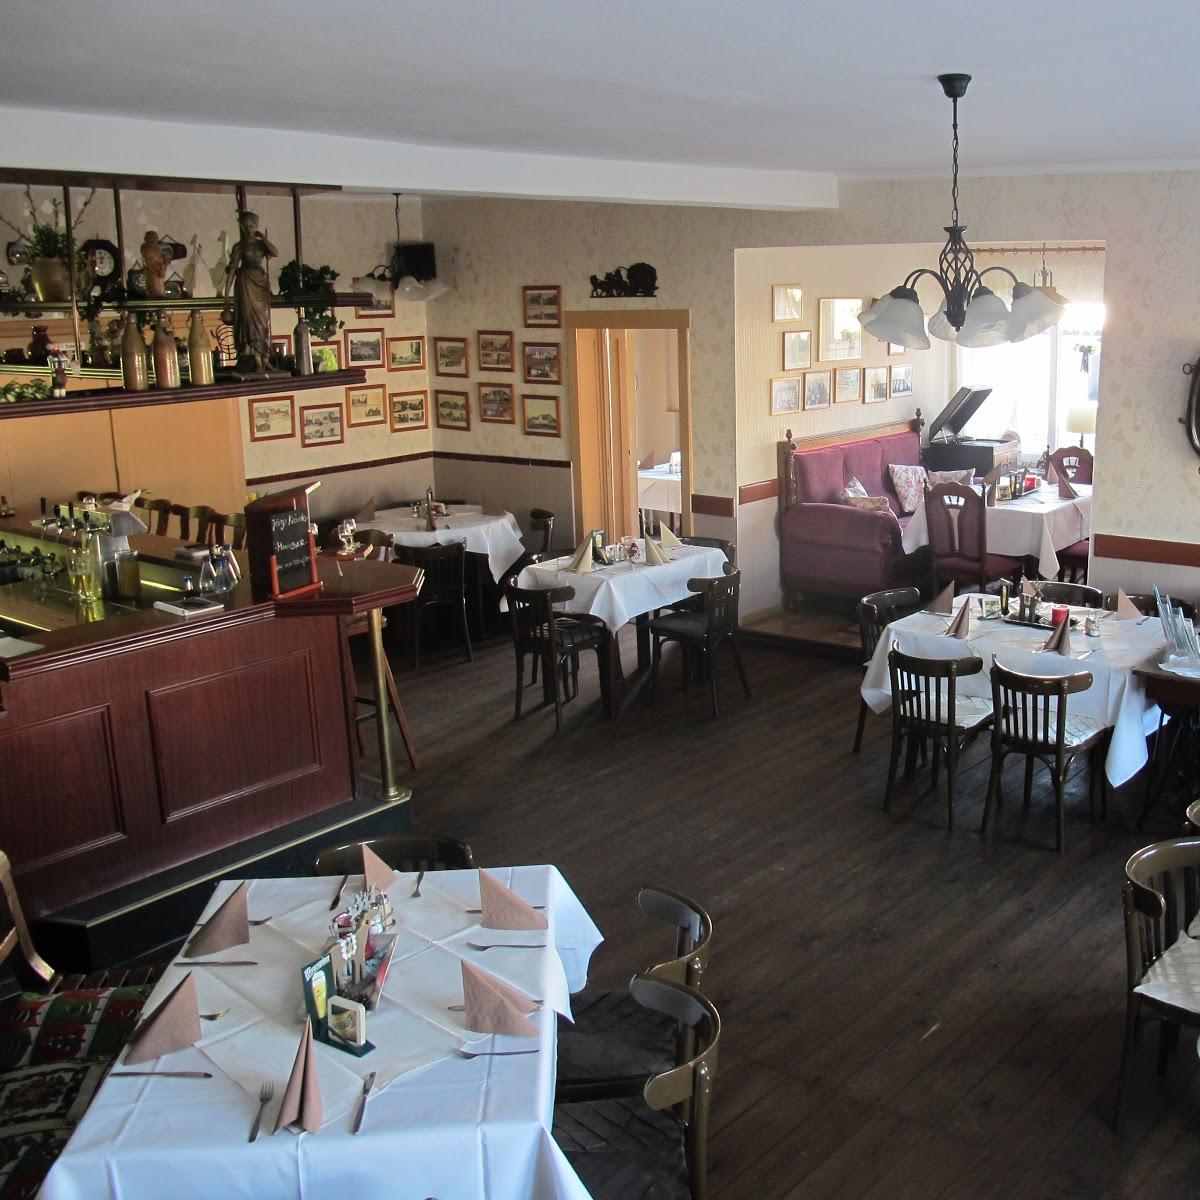 Restaurant "Gasthaus Stuckatz" in Sallgast